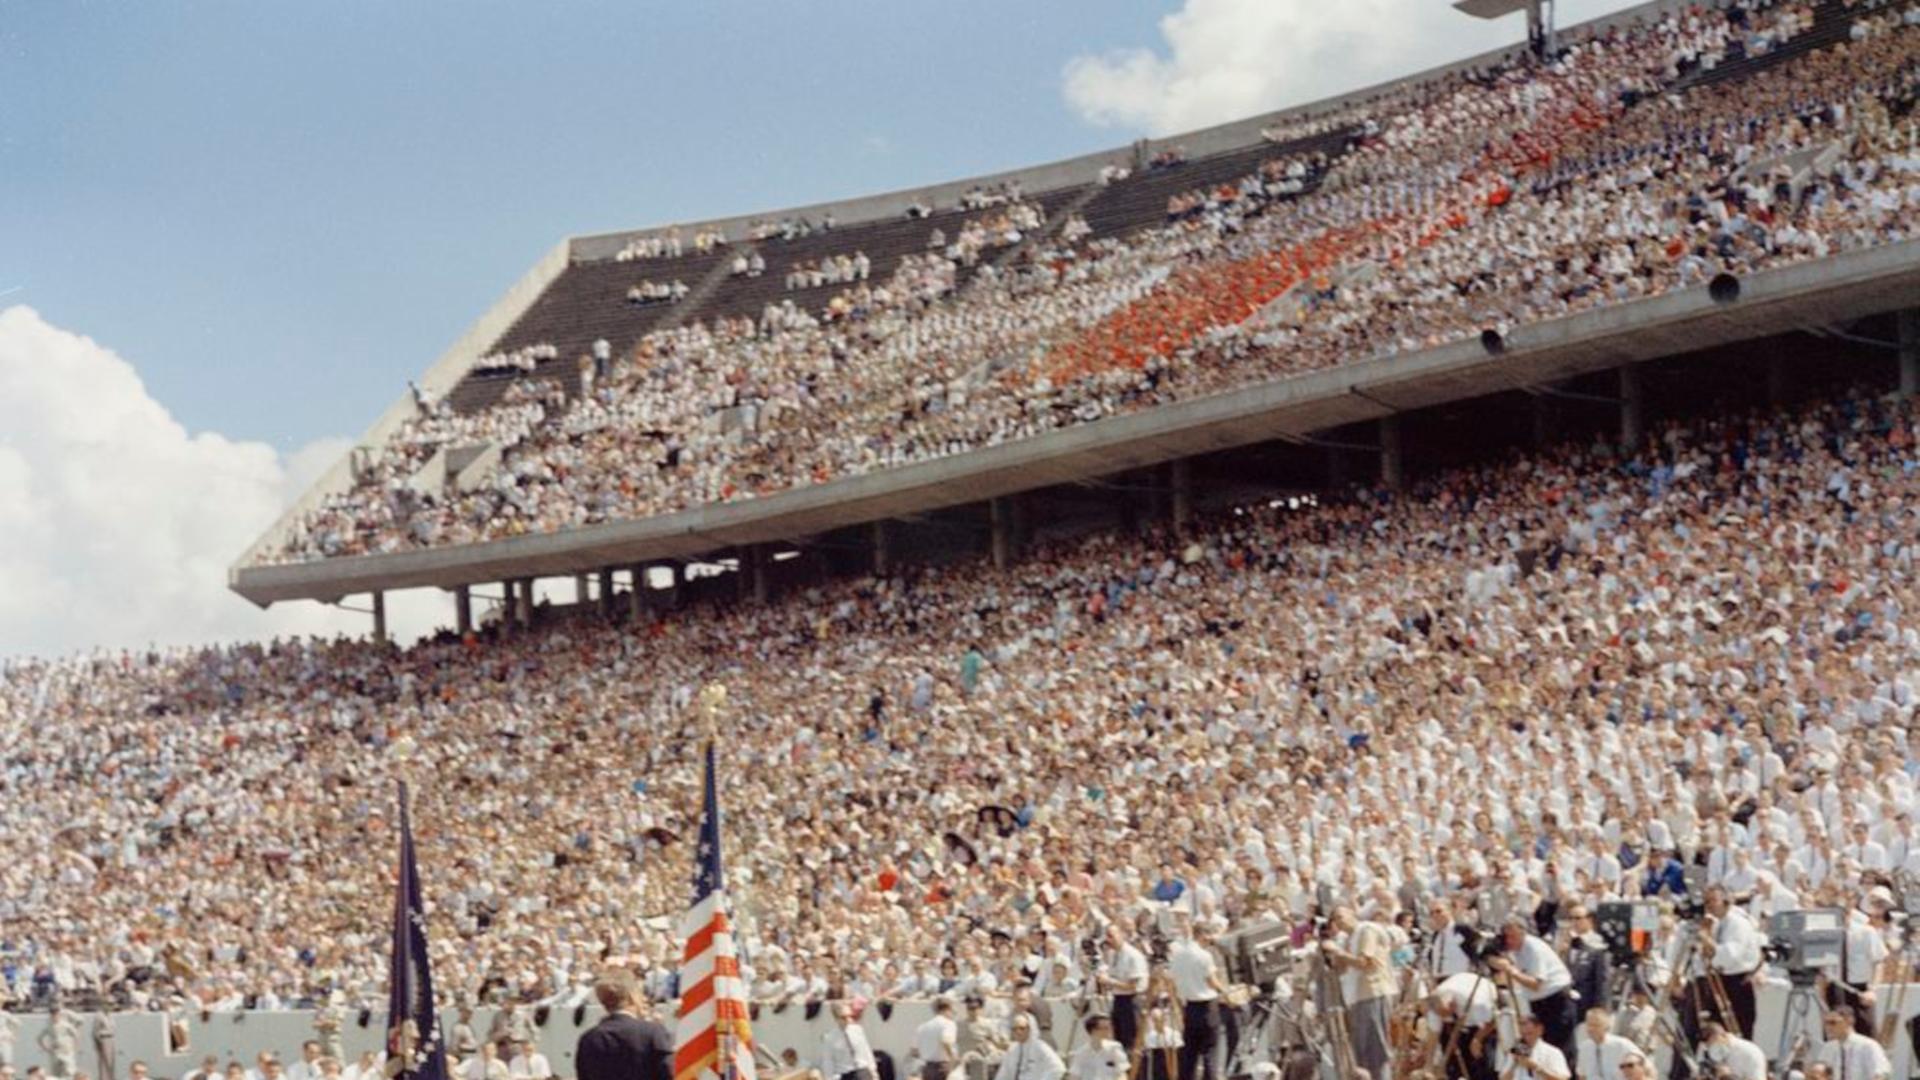 Präsident Kennedy sprach vor den voll besetzten Rängen des Stadions der Rice University